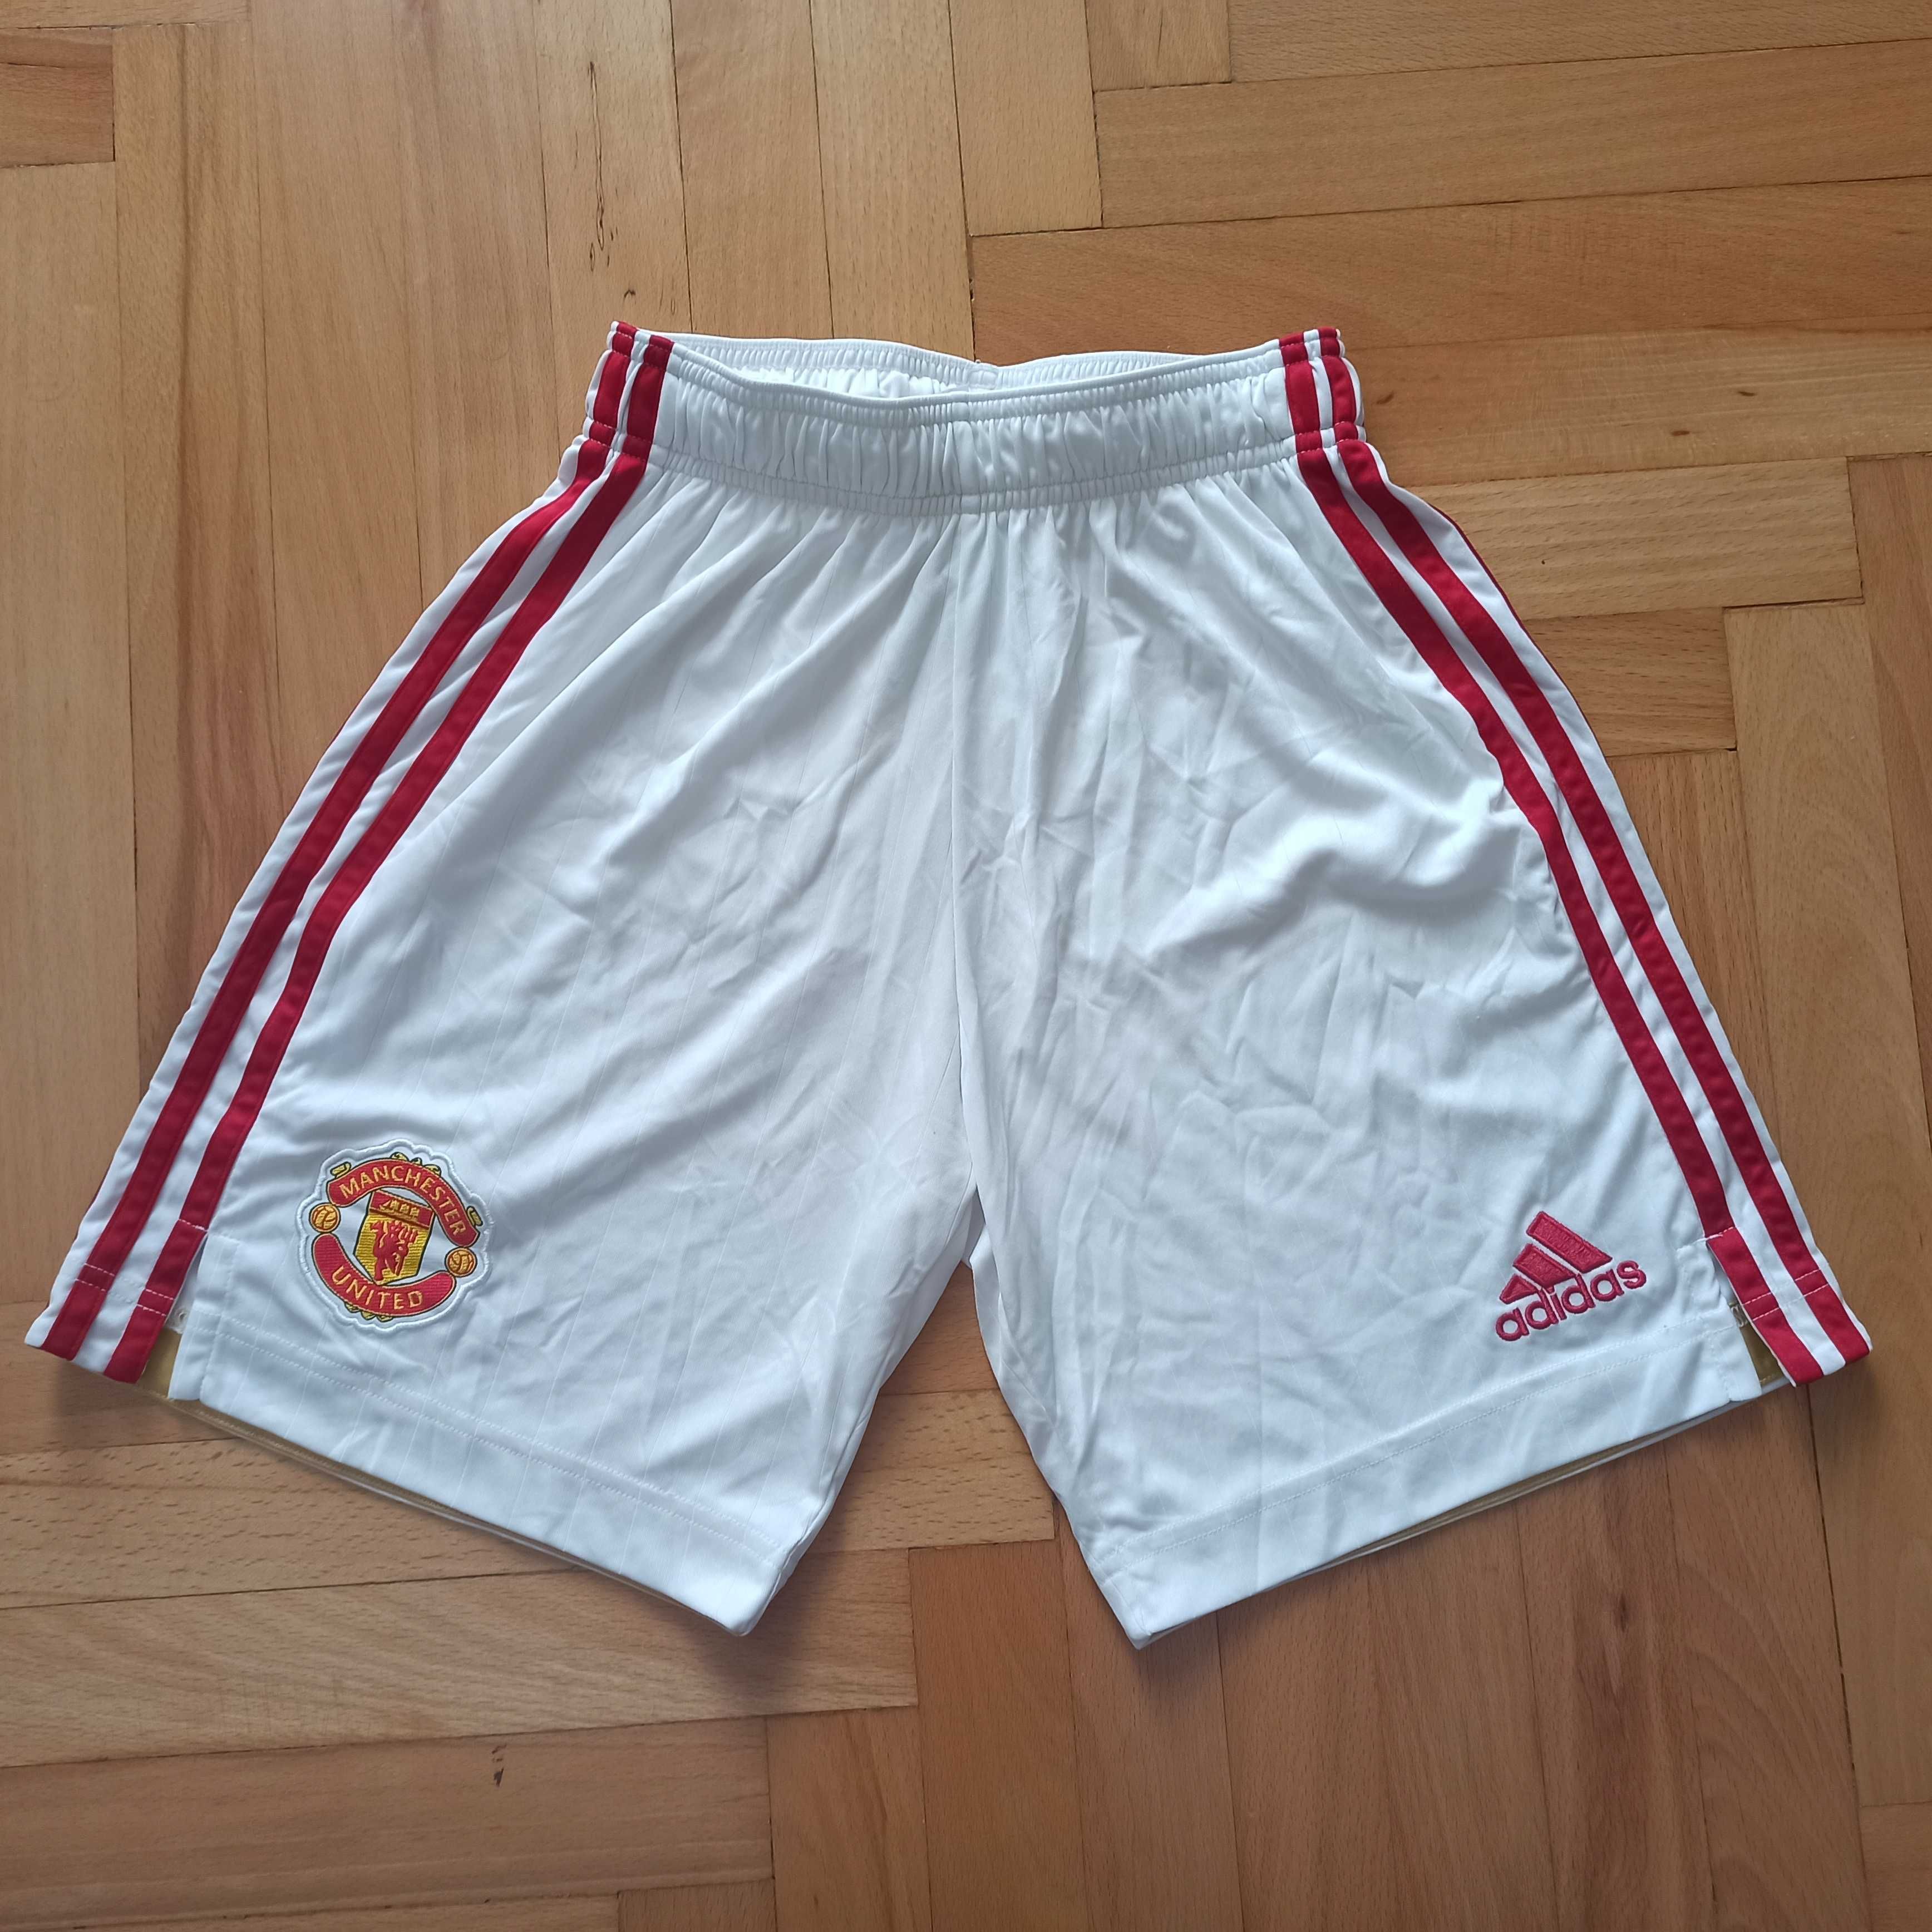 Oryginalne białe spodenki Manchester United firmy Adidas rozmiar XS